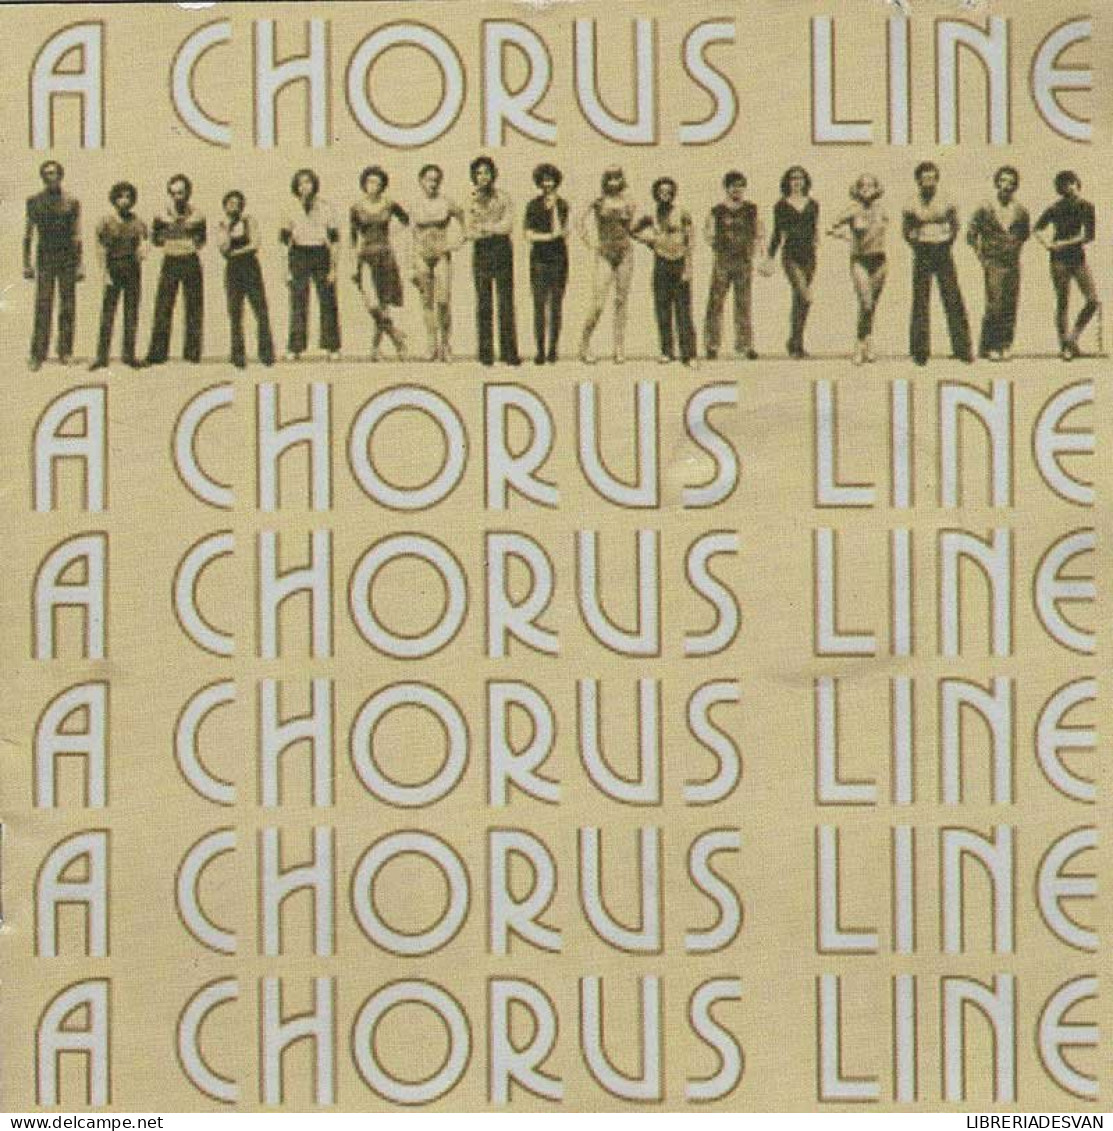 A Chorus Line - Original Broadway Cast Recording. CD - Filmmuziek